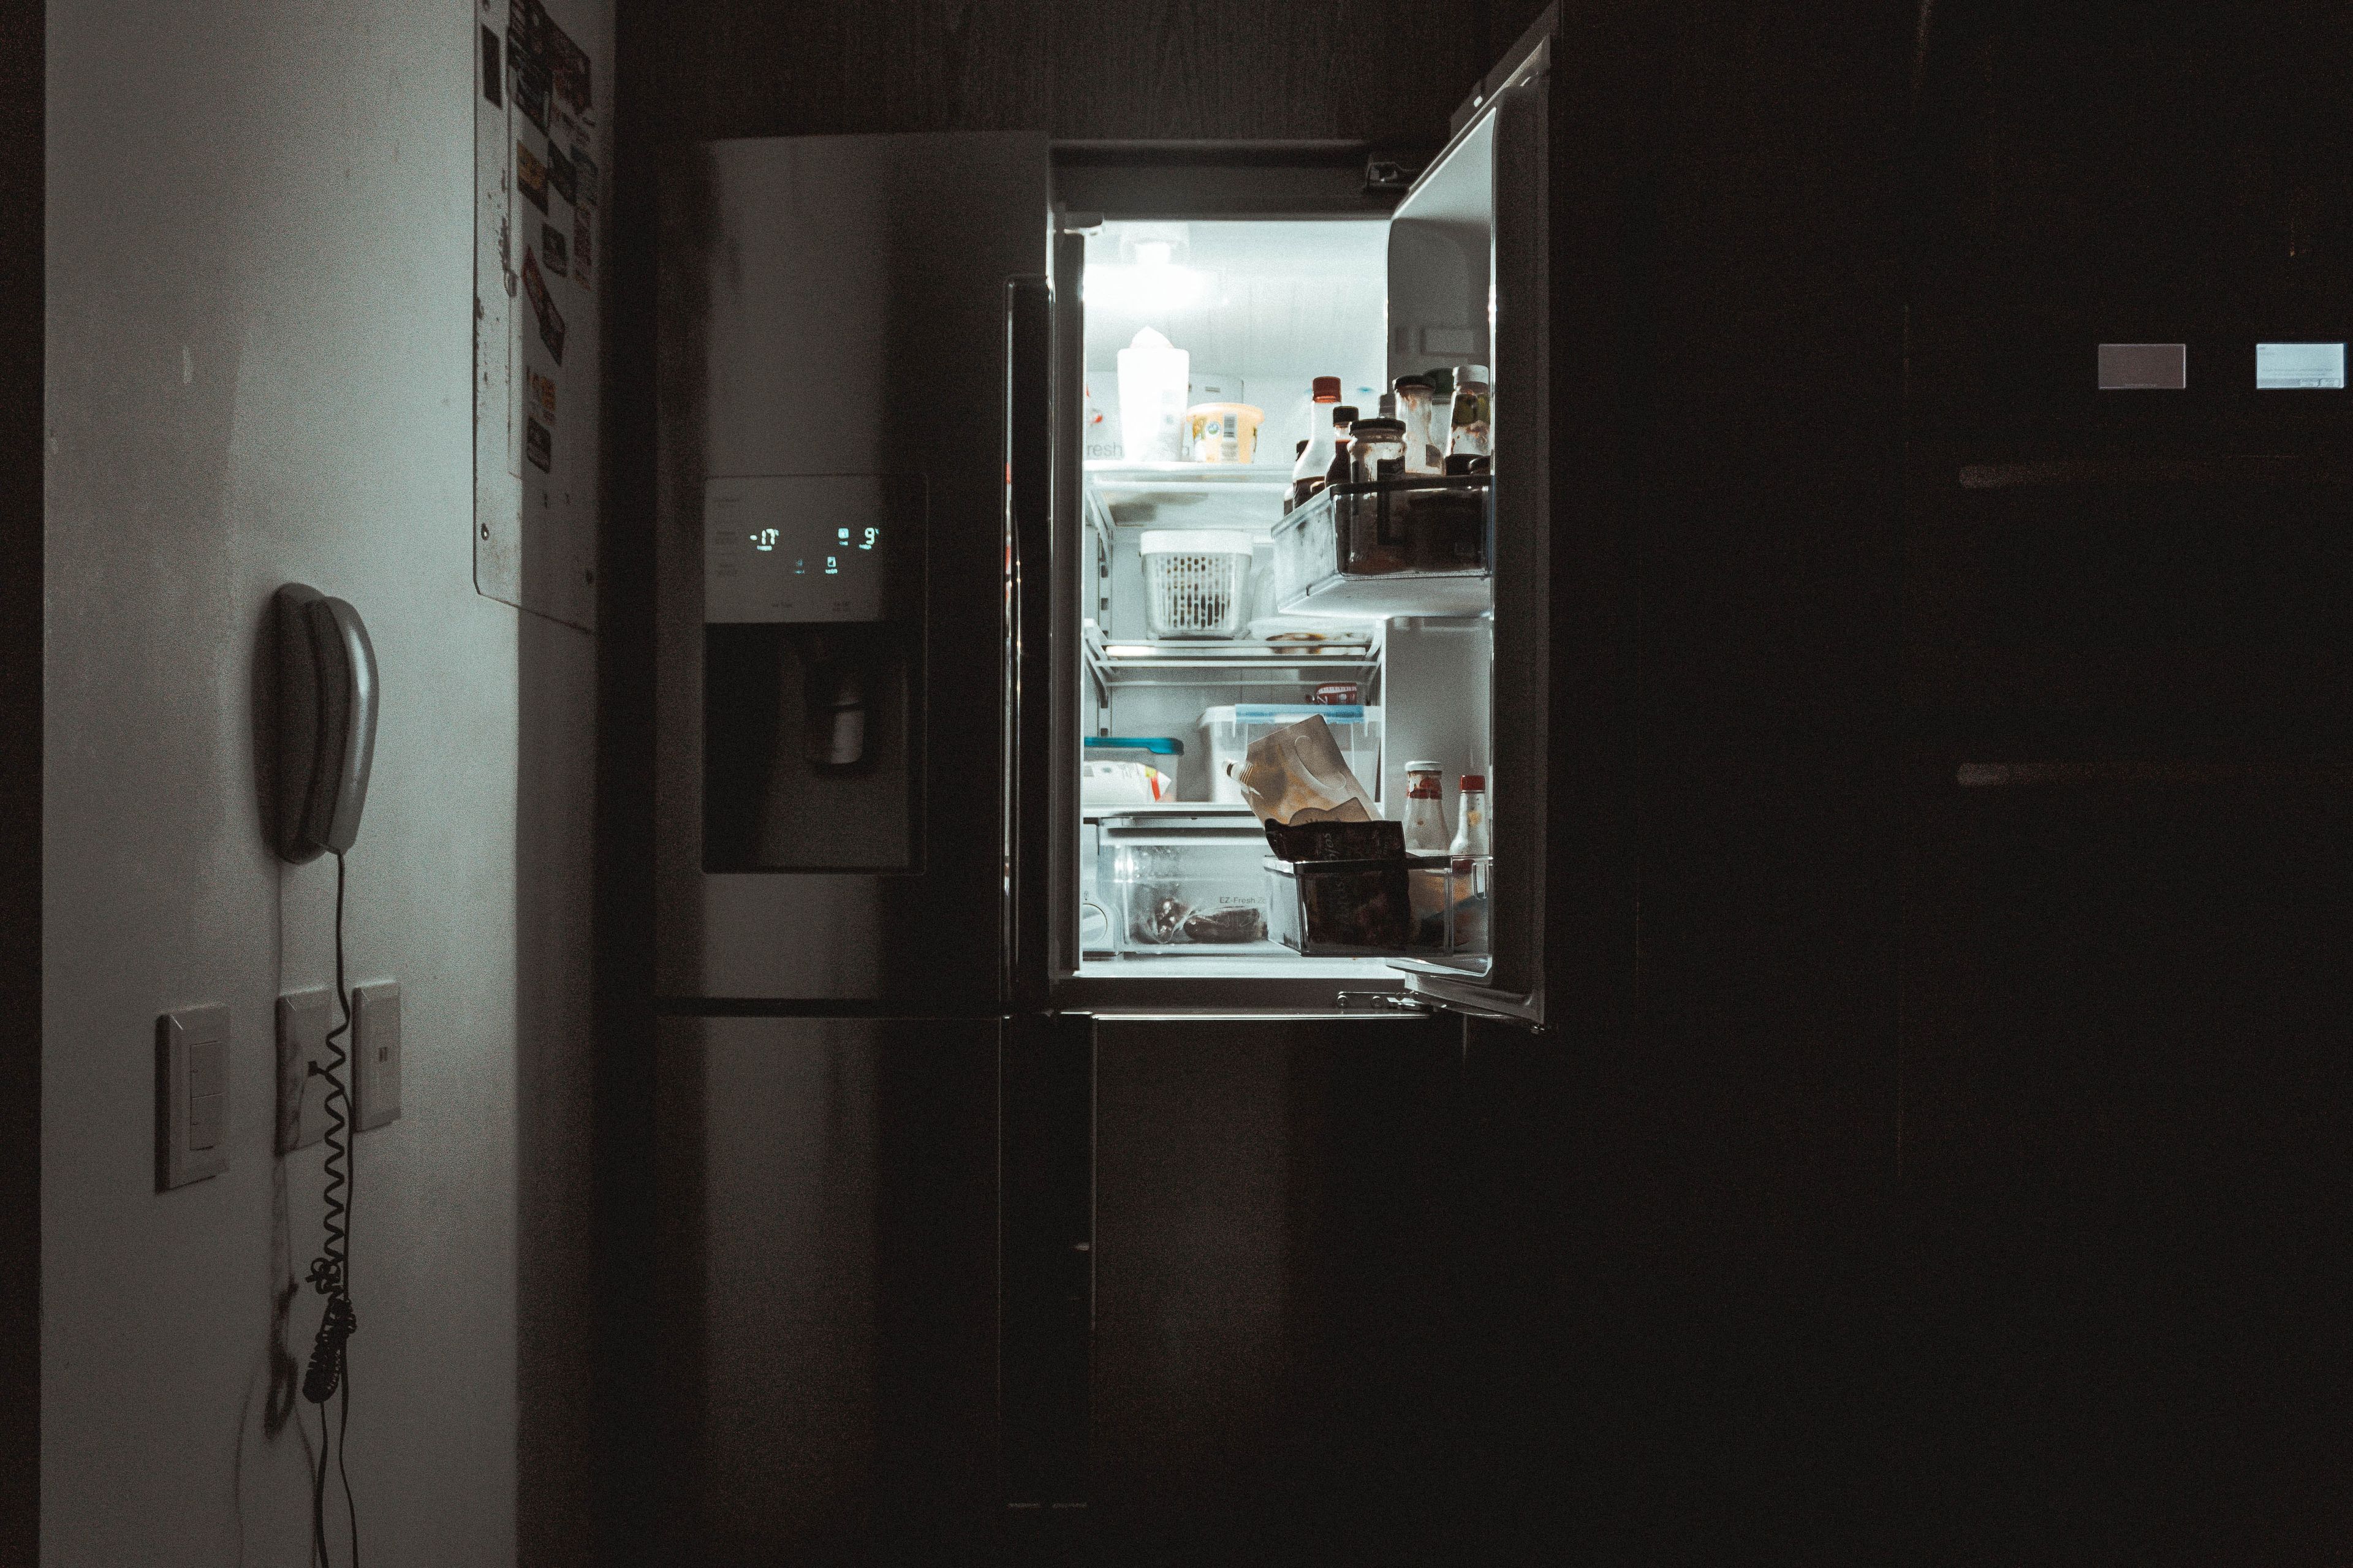 No dejar la nevera abierta es uno de los consejos para que el frigorífico consuma menos (Unsplash)